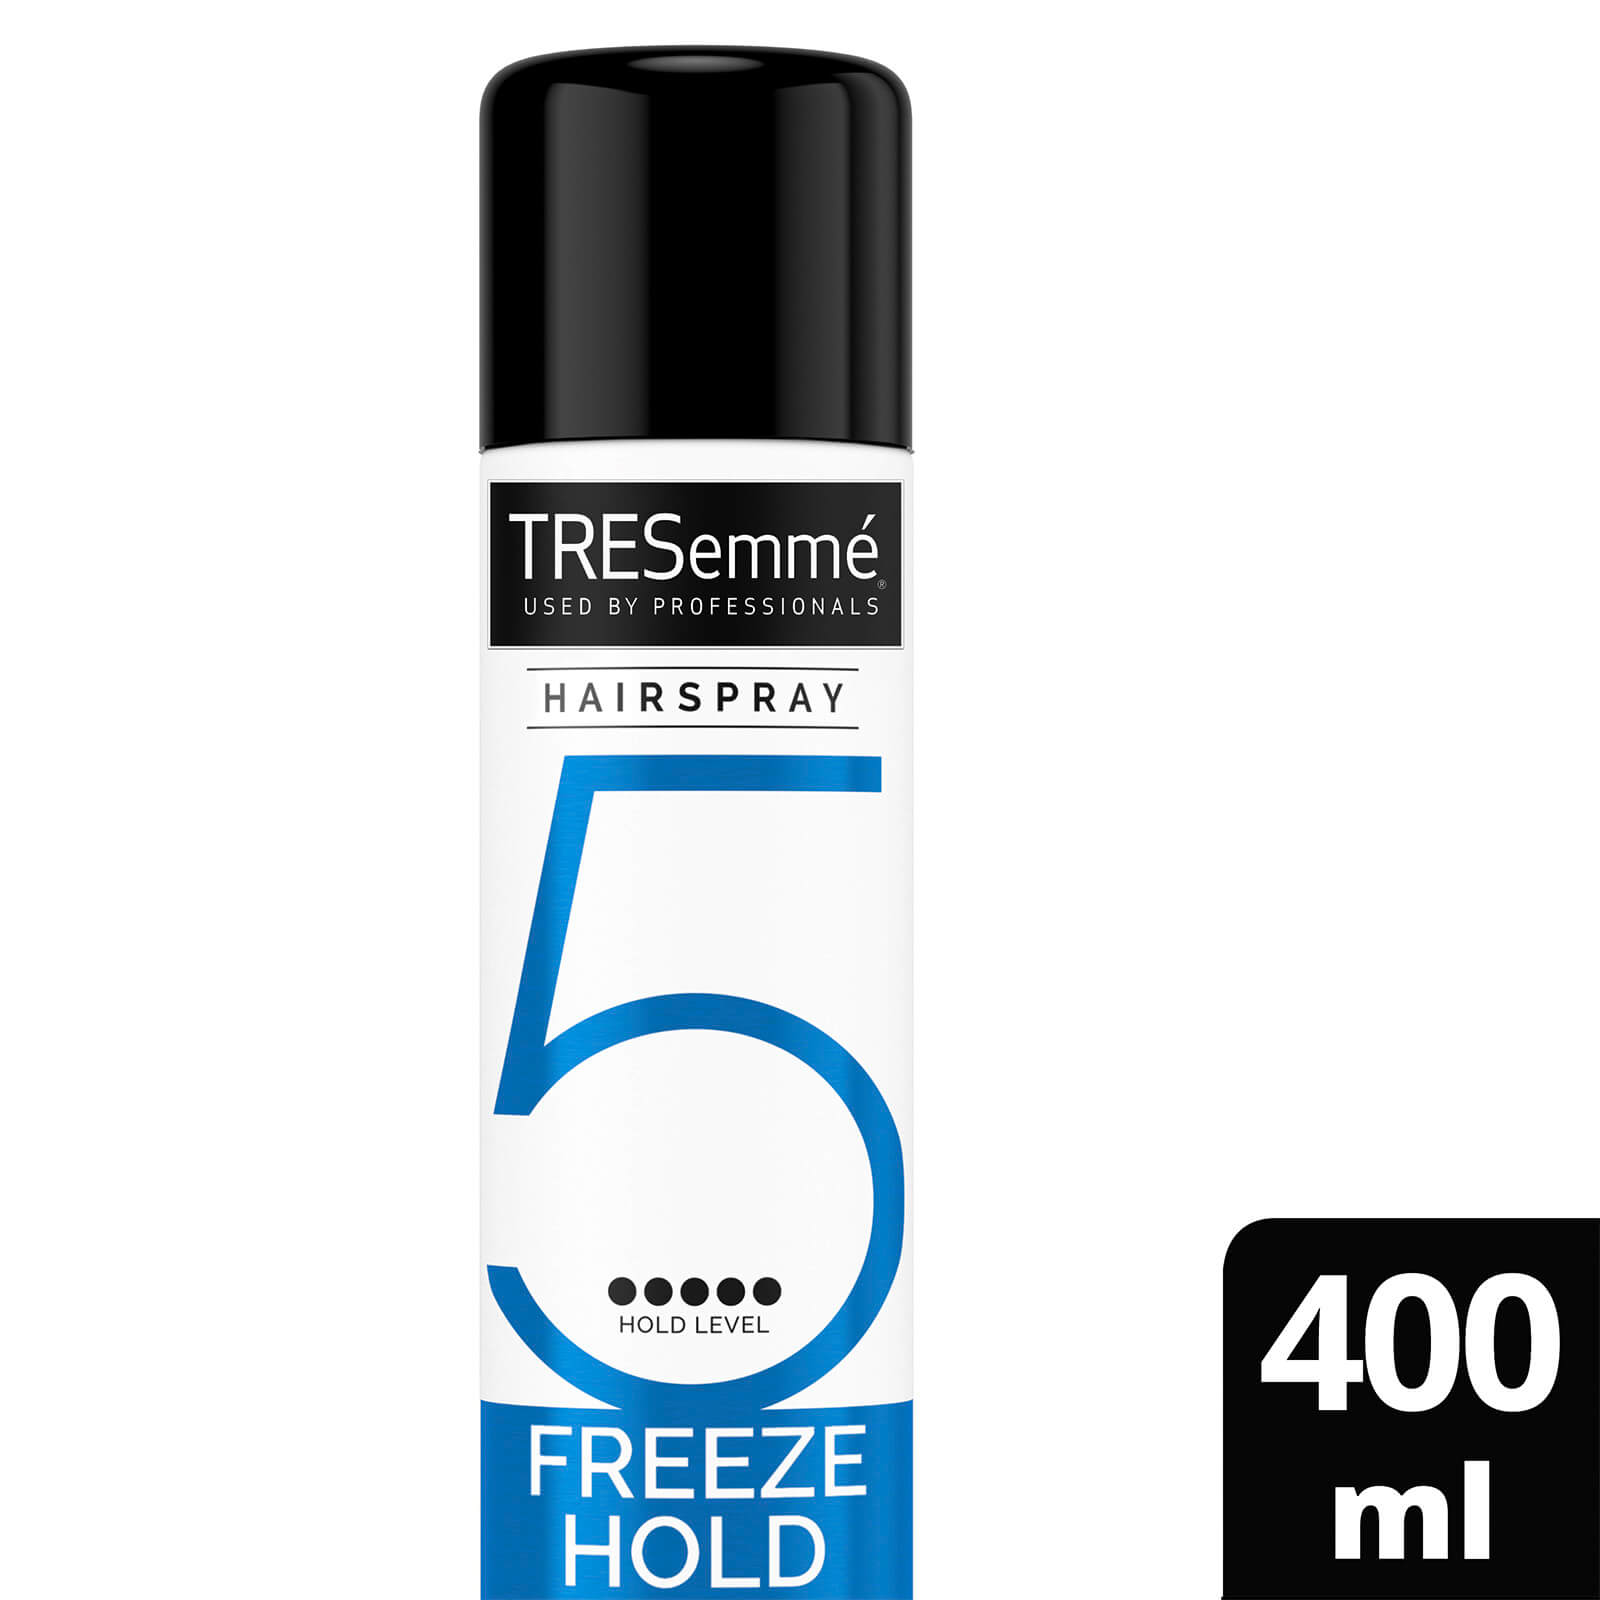 Tresemme TRESemmé Freeze Hold HairSpray 400ml